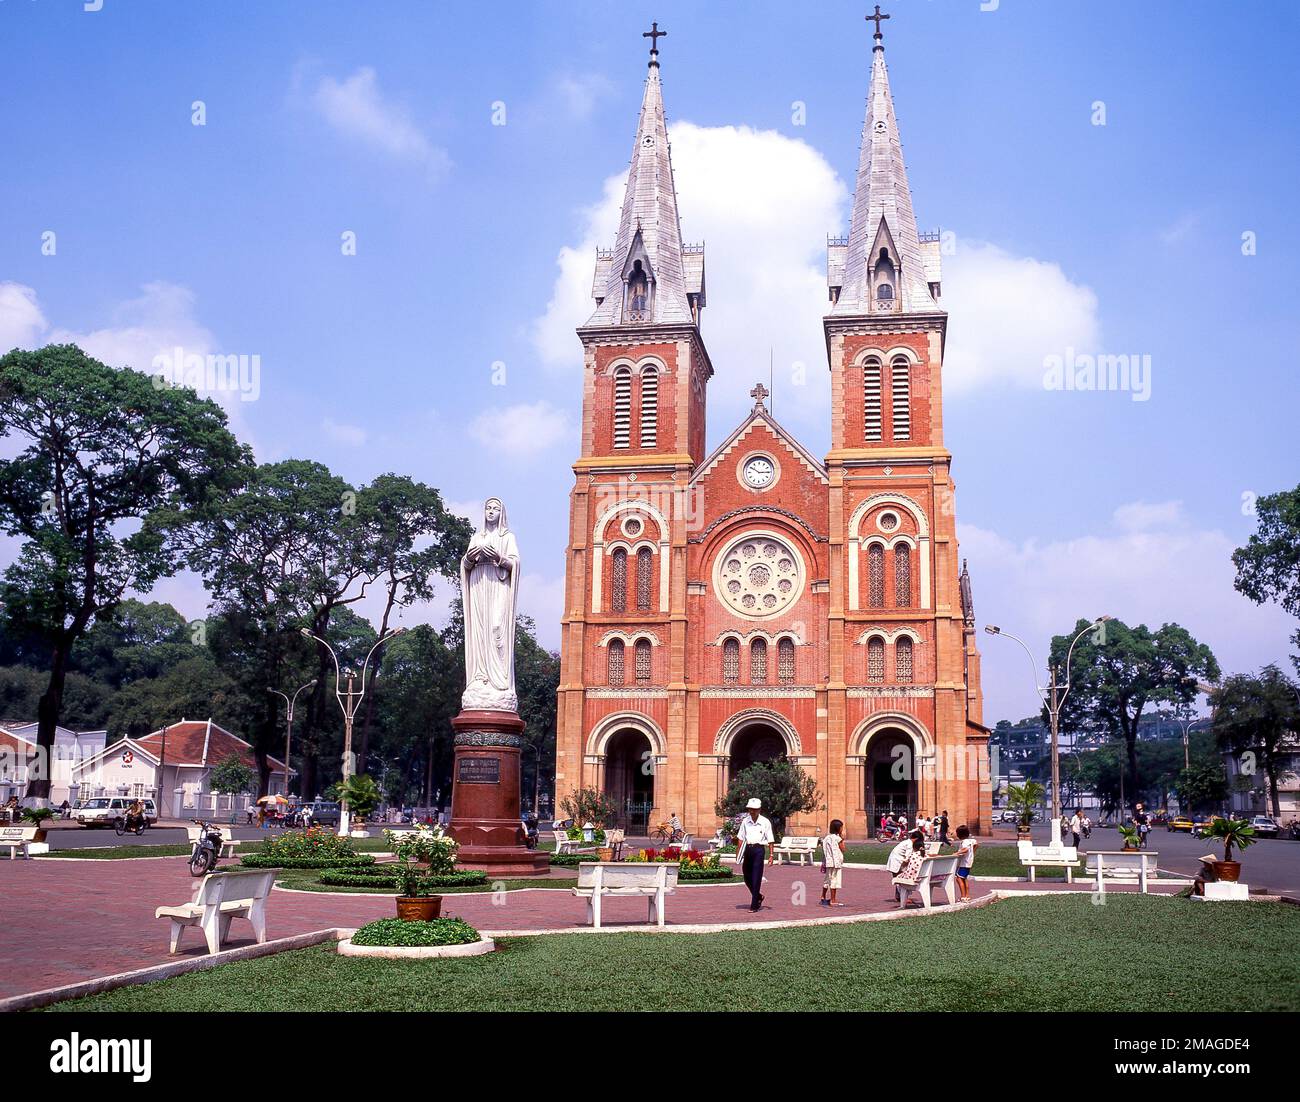 Cattedrale di Notre-Dame Basilica di Saigon, Công xã Parigi, ho Chi Minh City (Saigon), Repubblica socialista del Vietnam Foto Stock